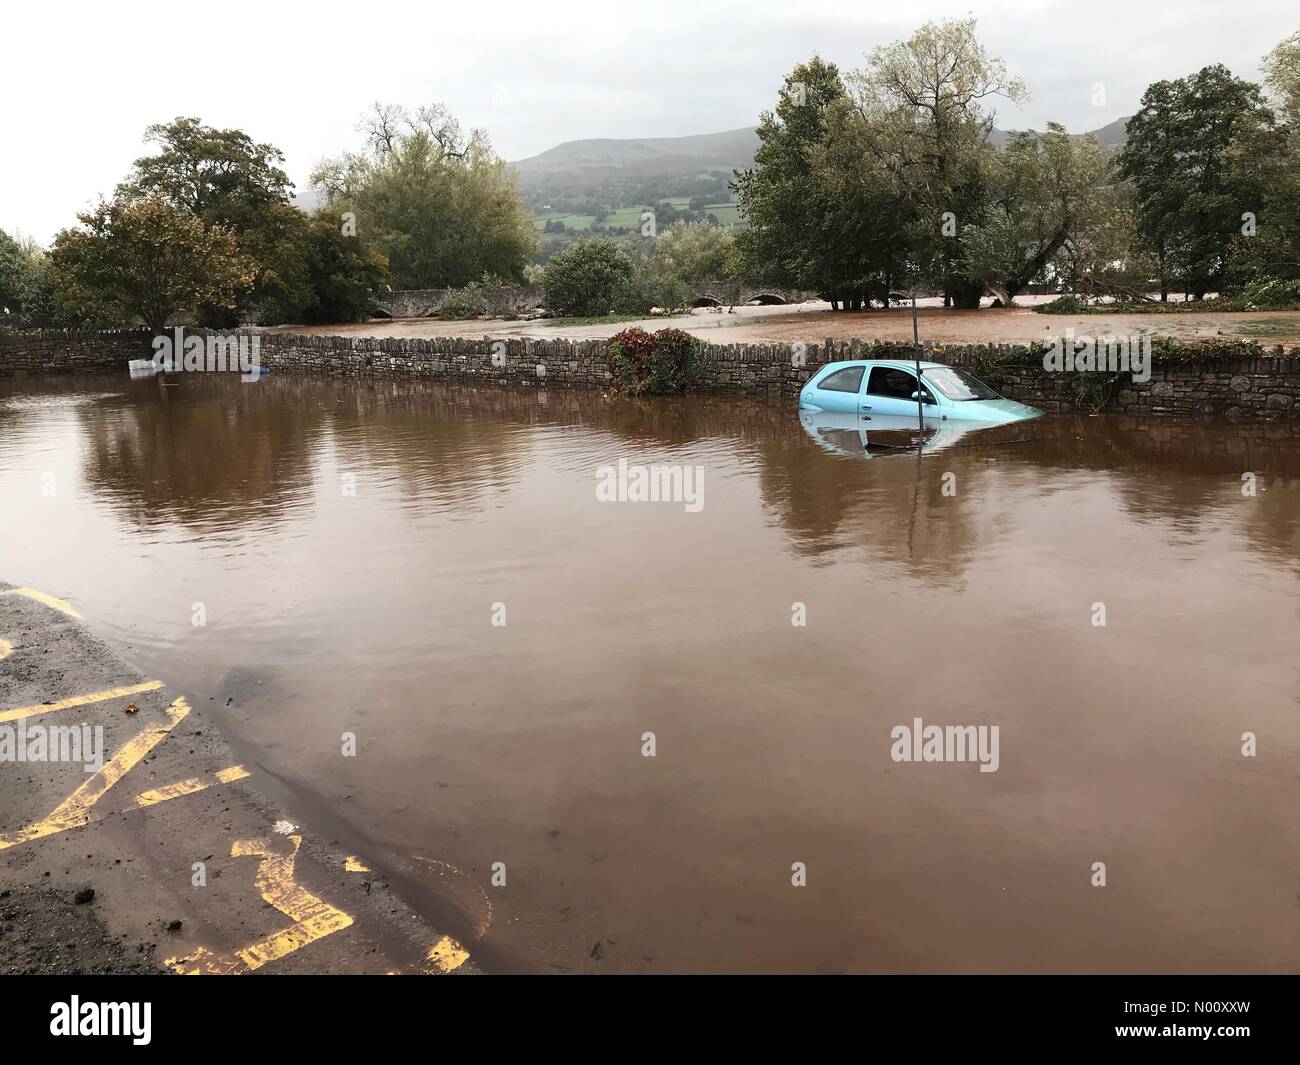 Regno Unito - Previsioni del tempo - Le inondazioni a Crickhowell Galles - Sabato 13 Ottobre 2018 - Un auto abbandonate sommerso in un parcheggio adiacente al fiume Usk dopo piogge torrenziali e le inondazioni in Galles. Foto Stock